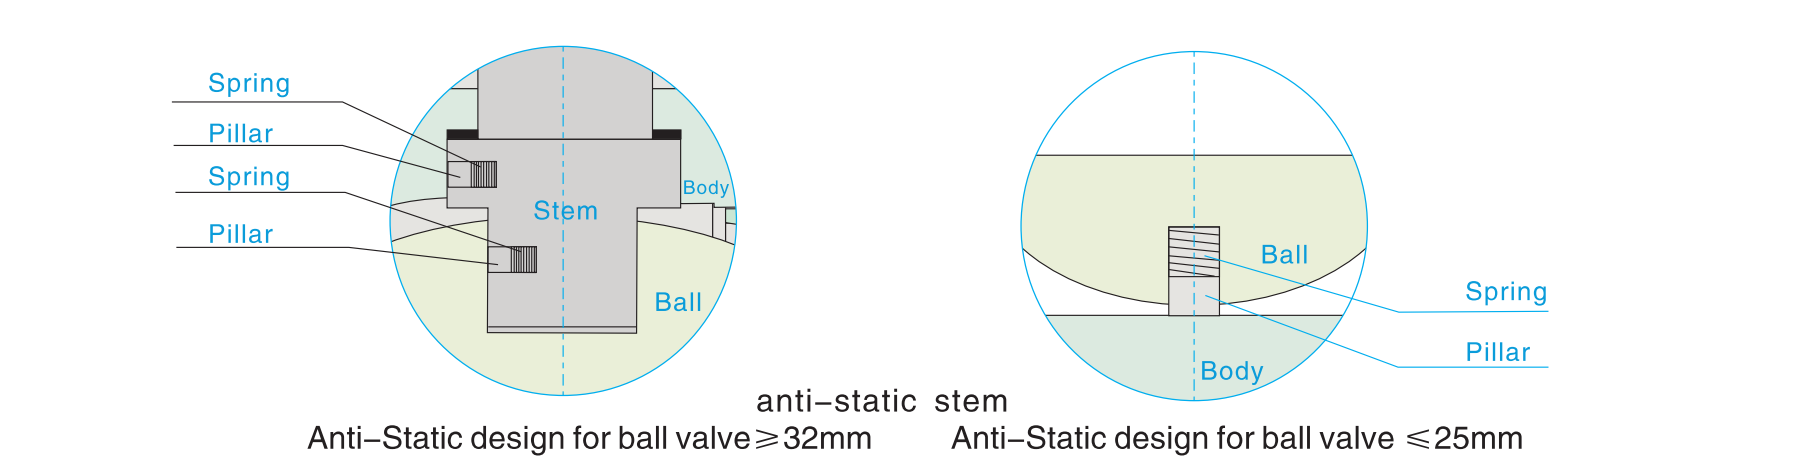 anti static design floating ball valves